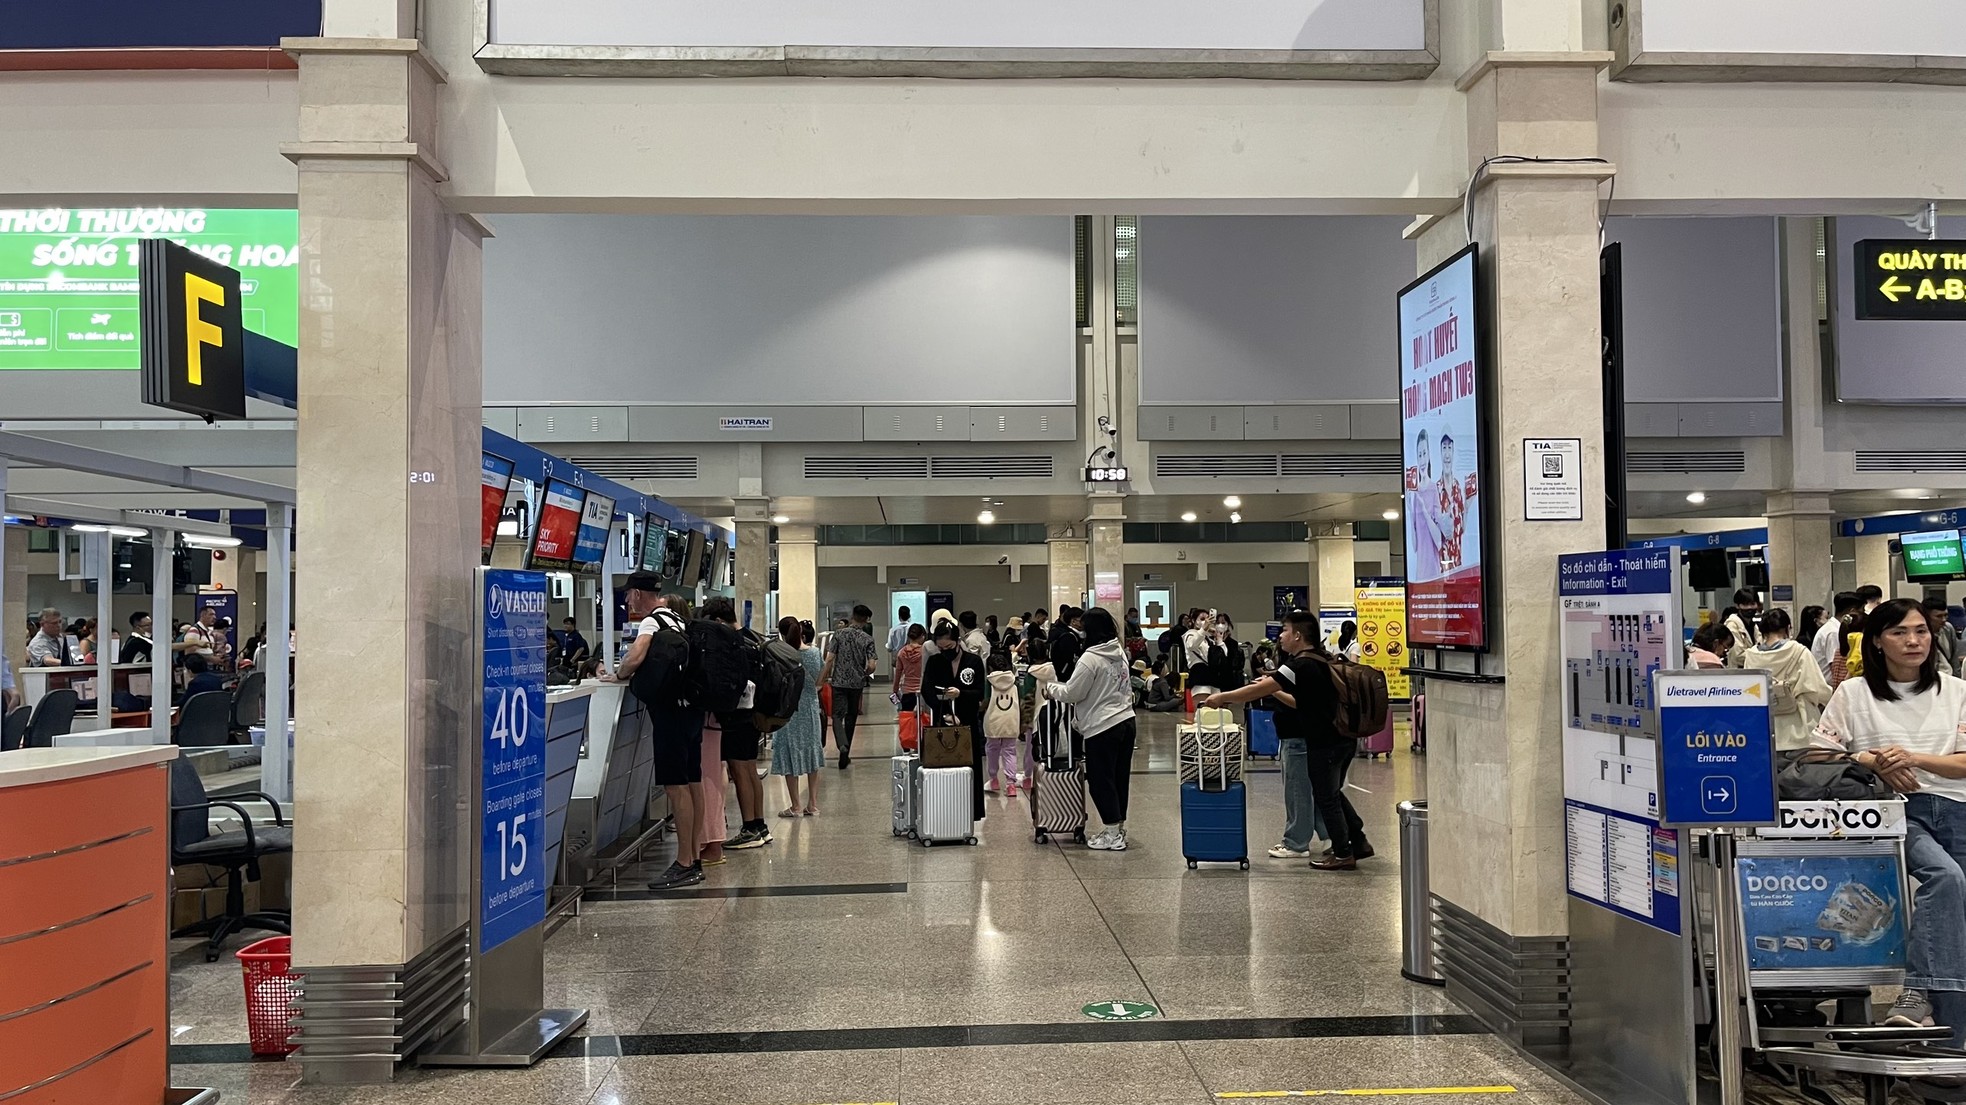 Sân bay Tân Sơn Nhất thông thoáng bất ngờ ngày 28 Tết ảnh 9